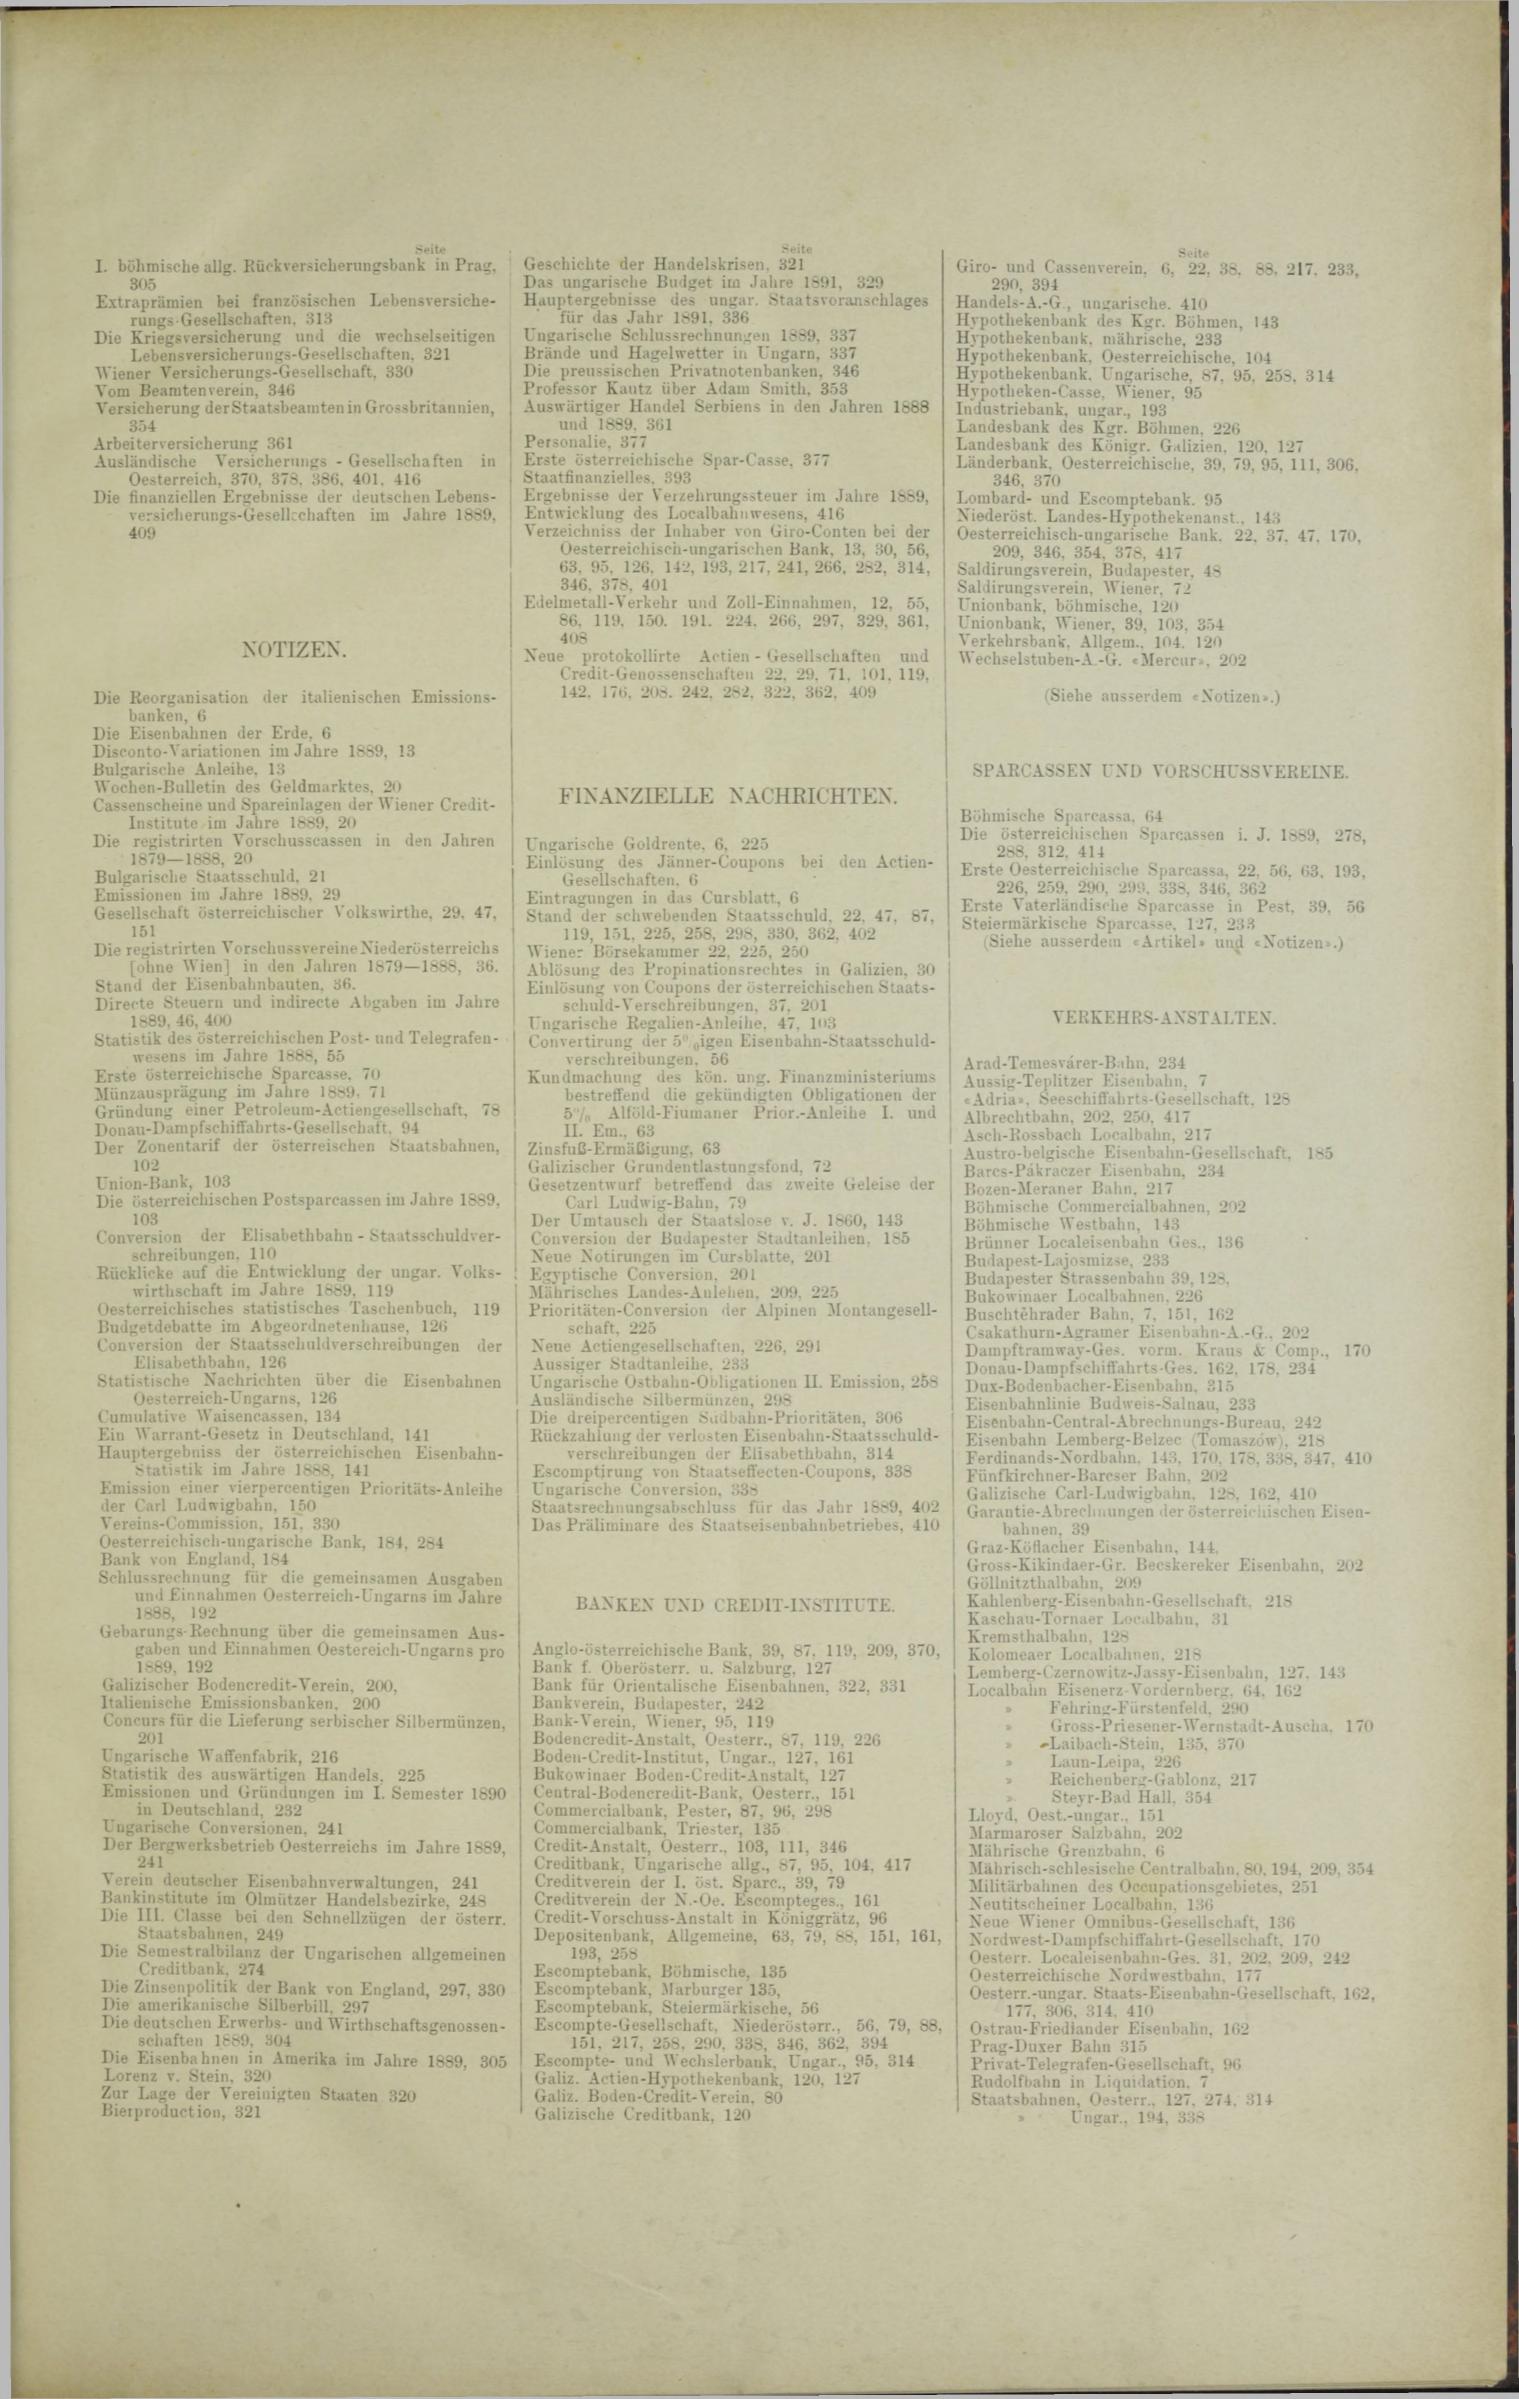 Der Tresor 25.12.1890 - Seite 11